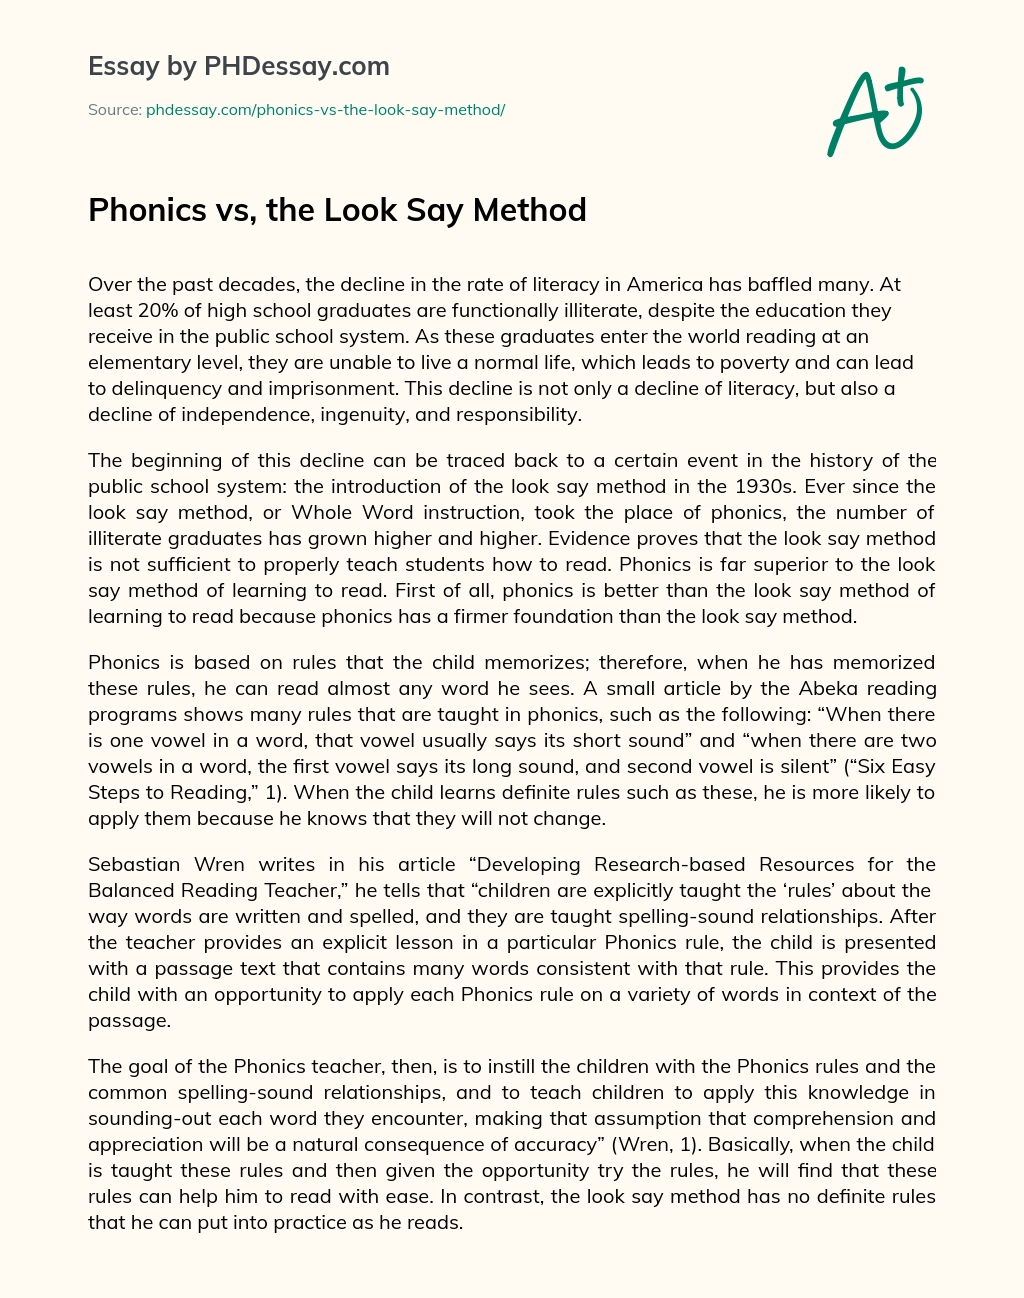 Phonics vs, the Look Say Method essay